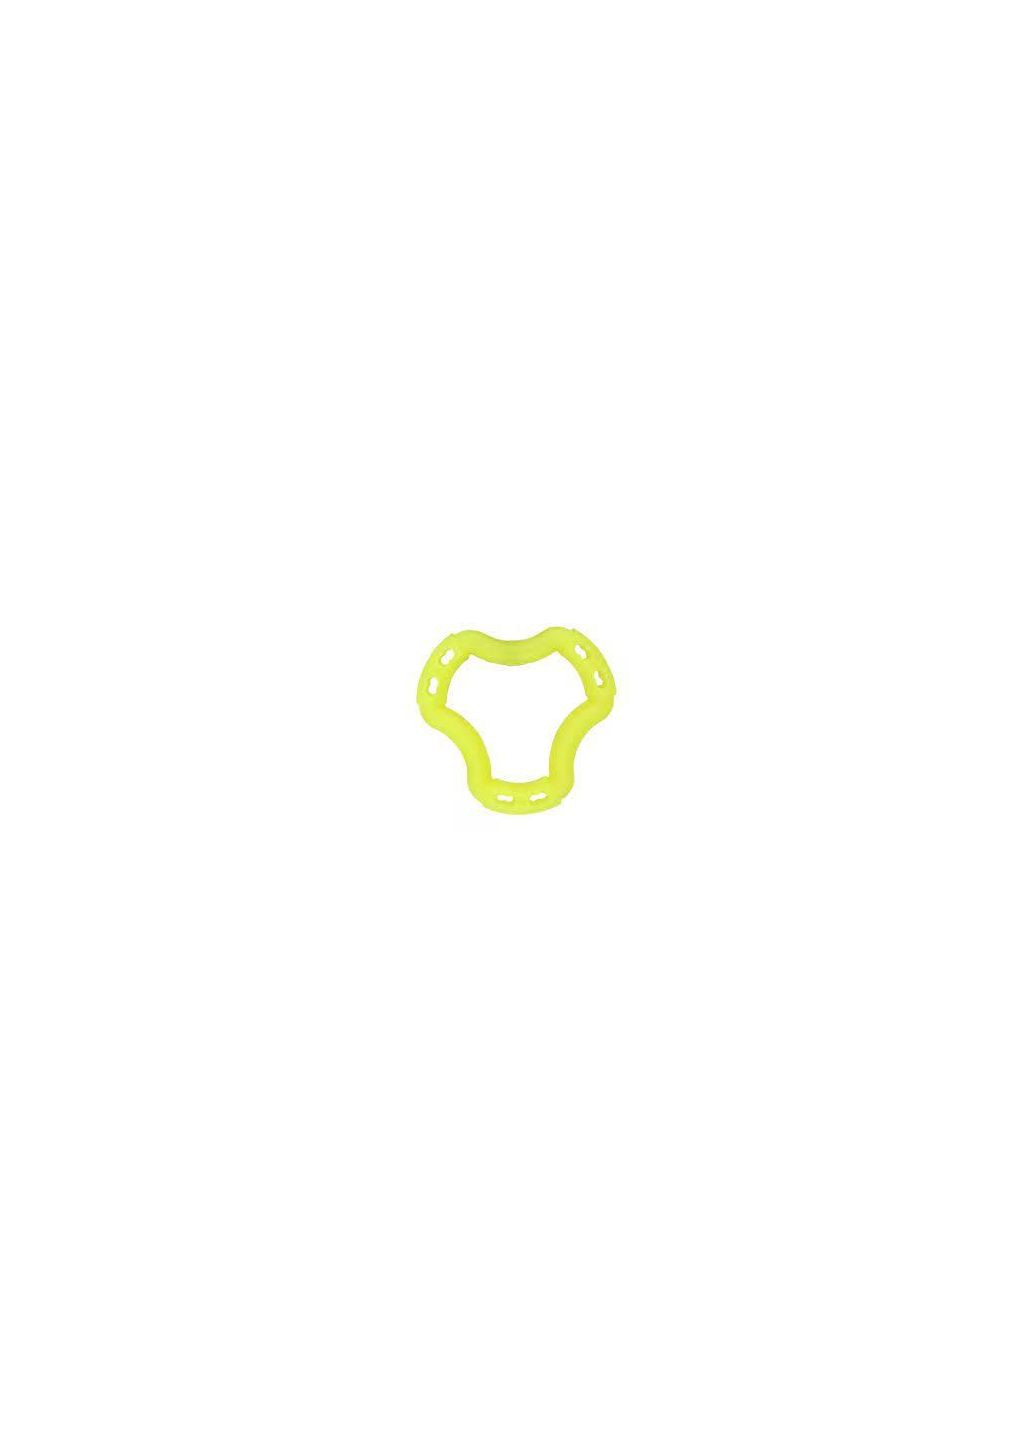 Іграшка Fun кільце 6 сторін, жовтий, 12 см AnimAll (278309172)